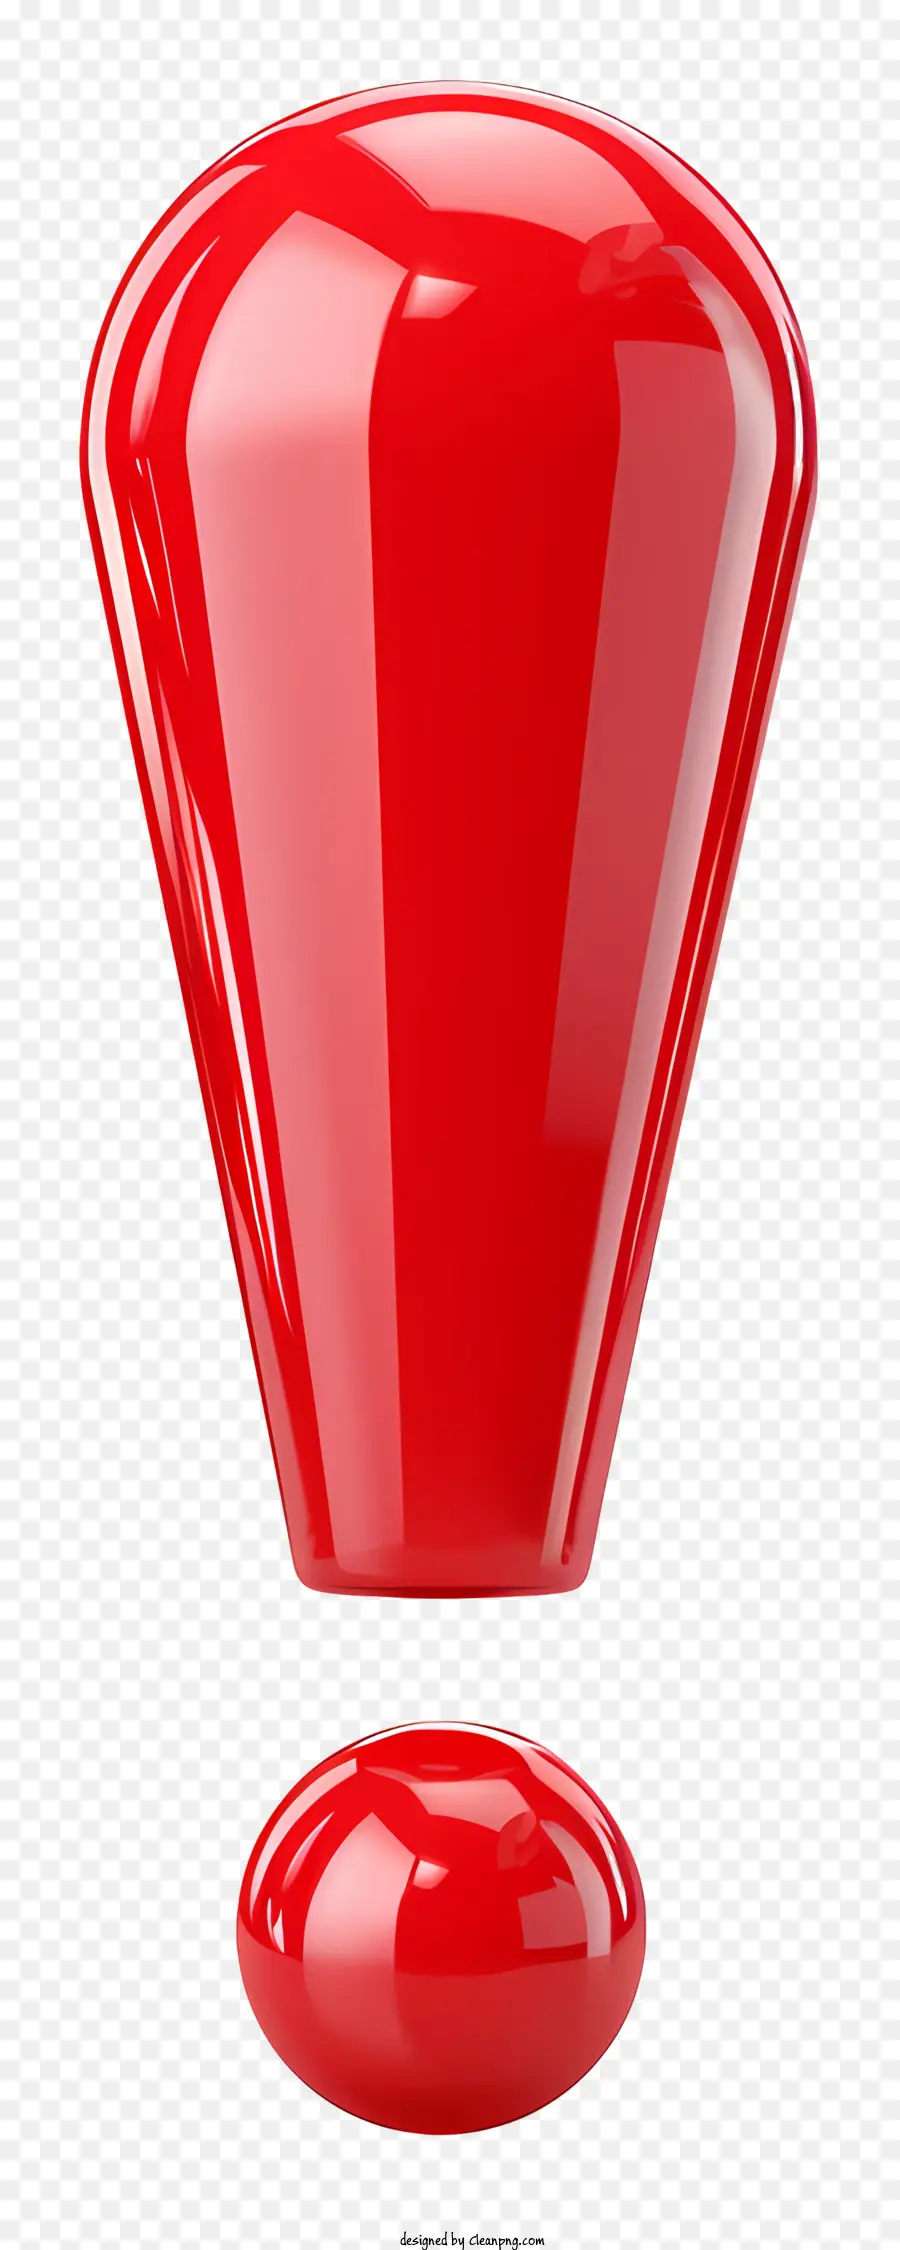 Ausrufer roter Objekt glatte Oberfläche schwarzer Hintergrundbirnenform - Rotes glattes Objekt auf schwarzem Hintergrund